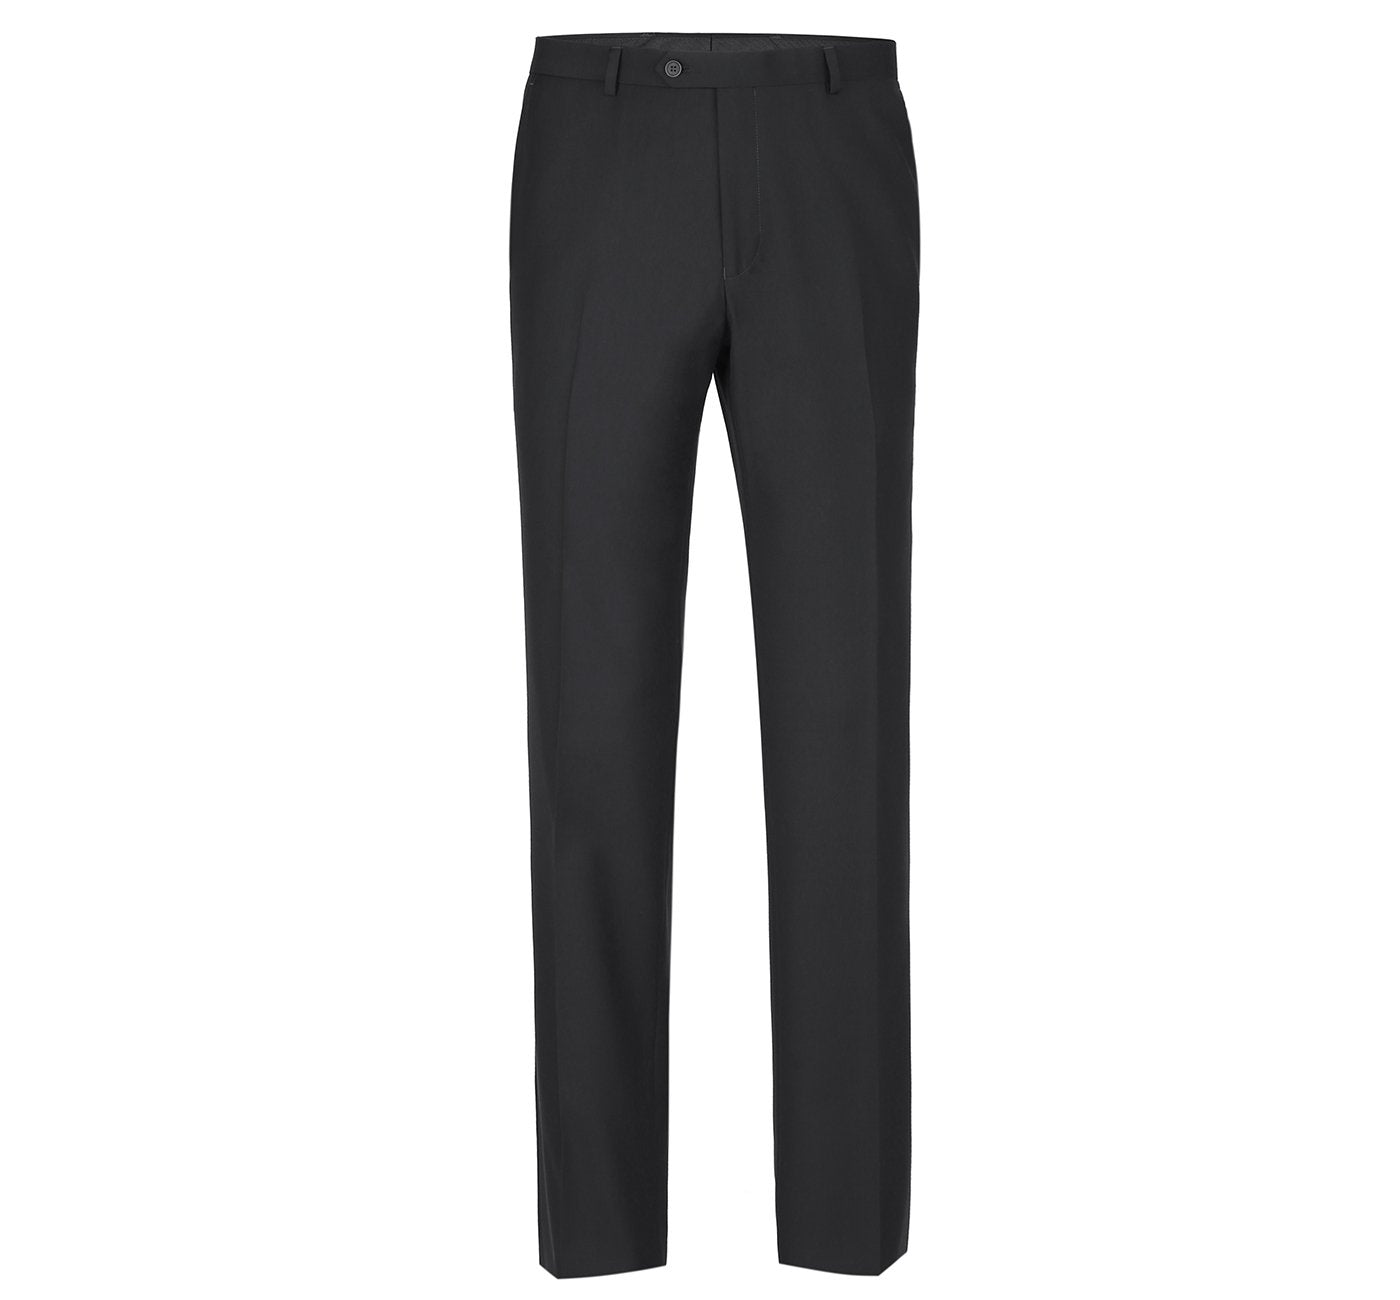 201-1 Men's Black Flat Front Suit Separate Pants